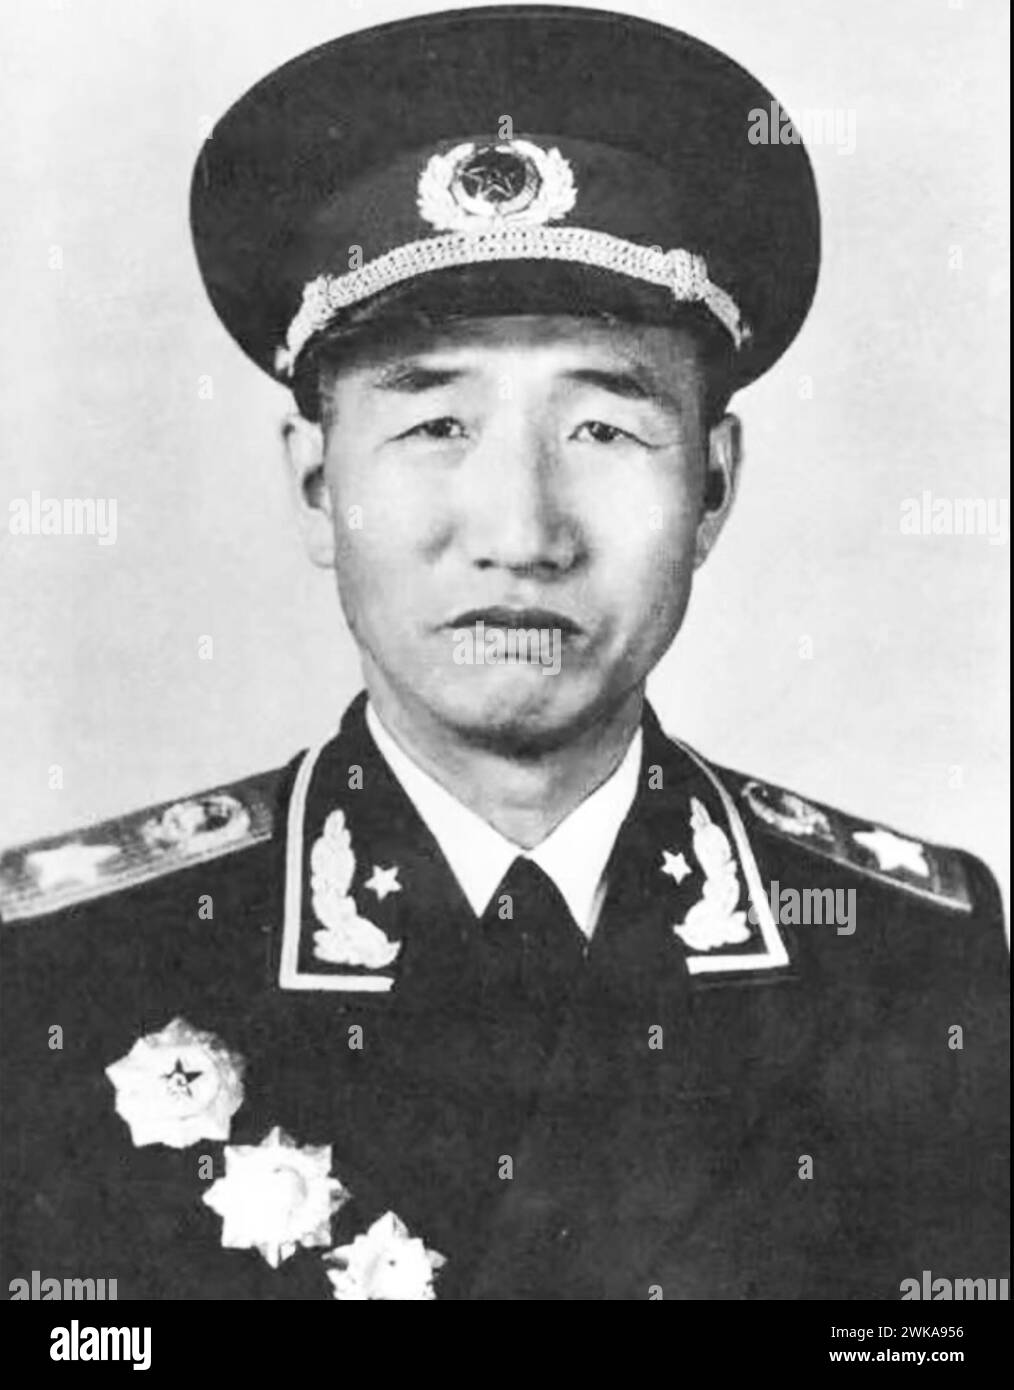 XU XIANGQIAN (1901-1990) ufficiale comunista cinese nell'Esercito rivoluzionario popolare cinese - foto del 1955 Foto Stock